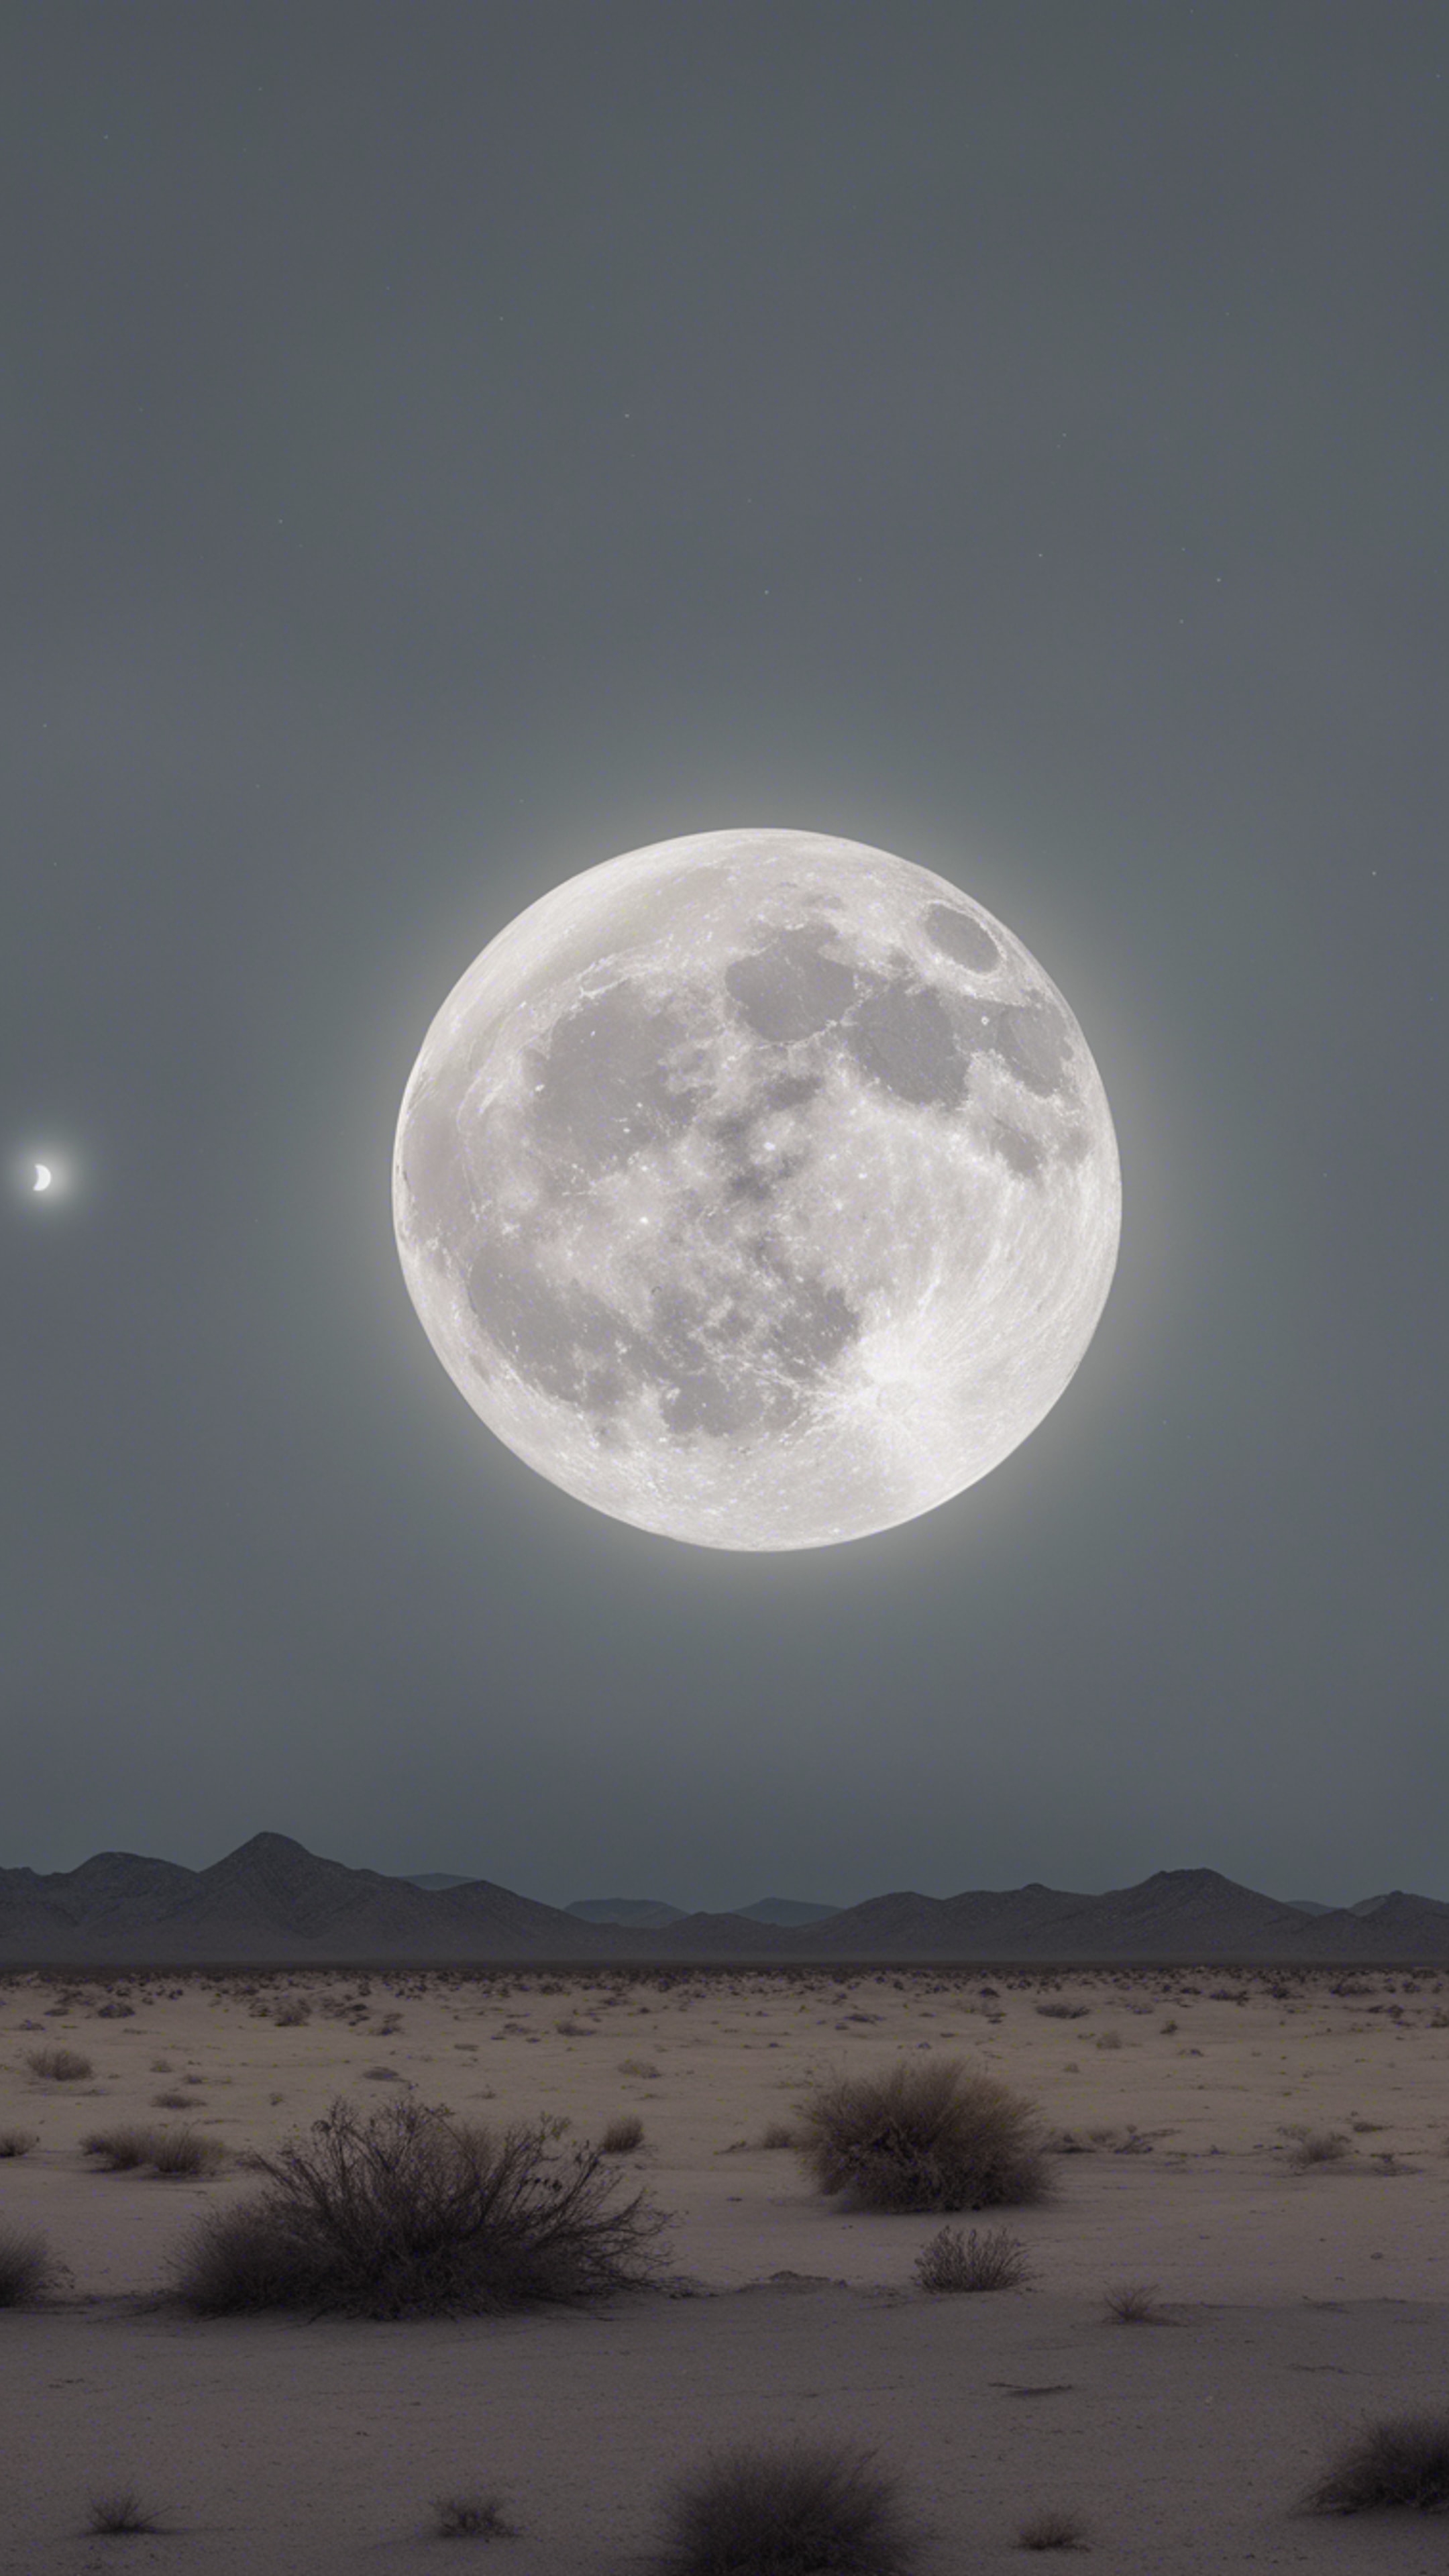 An eerie full moon casting a light gray hue over a desolate desert landscape. Tapet[b219b4d700dc4cdd8b88]